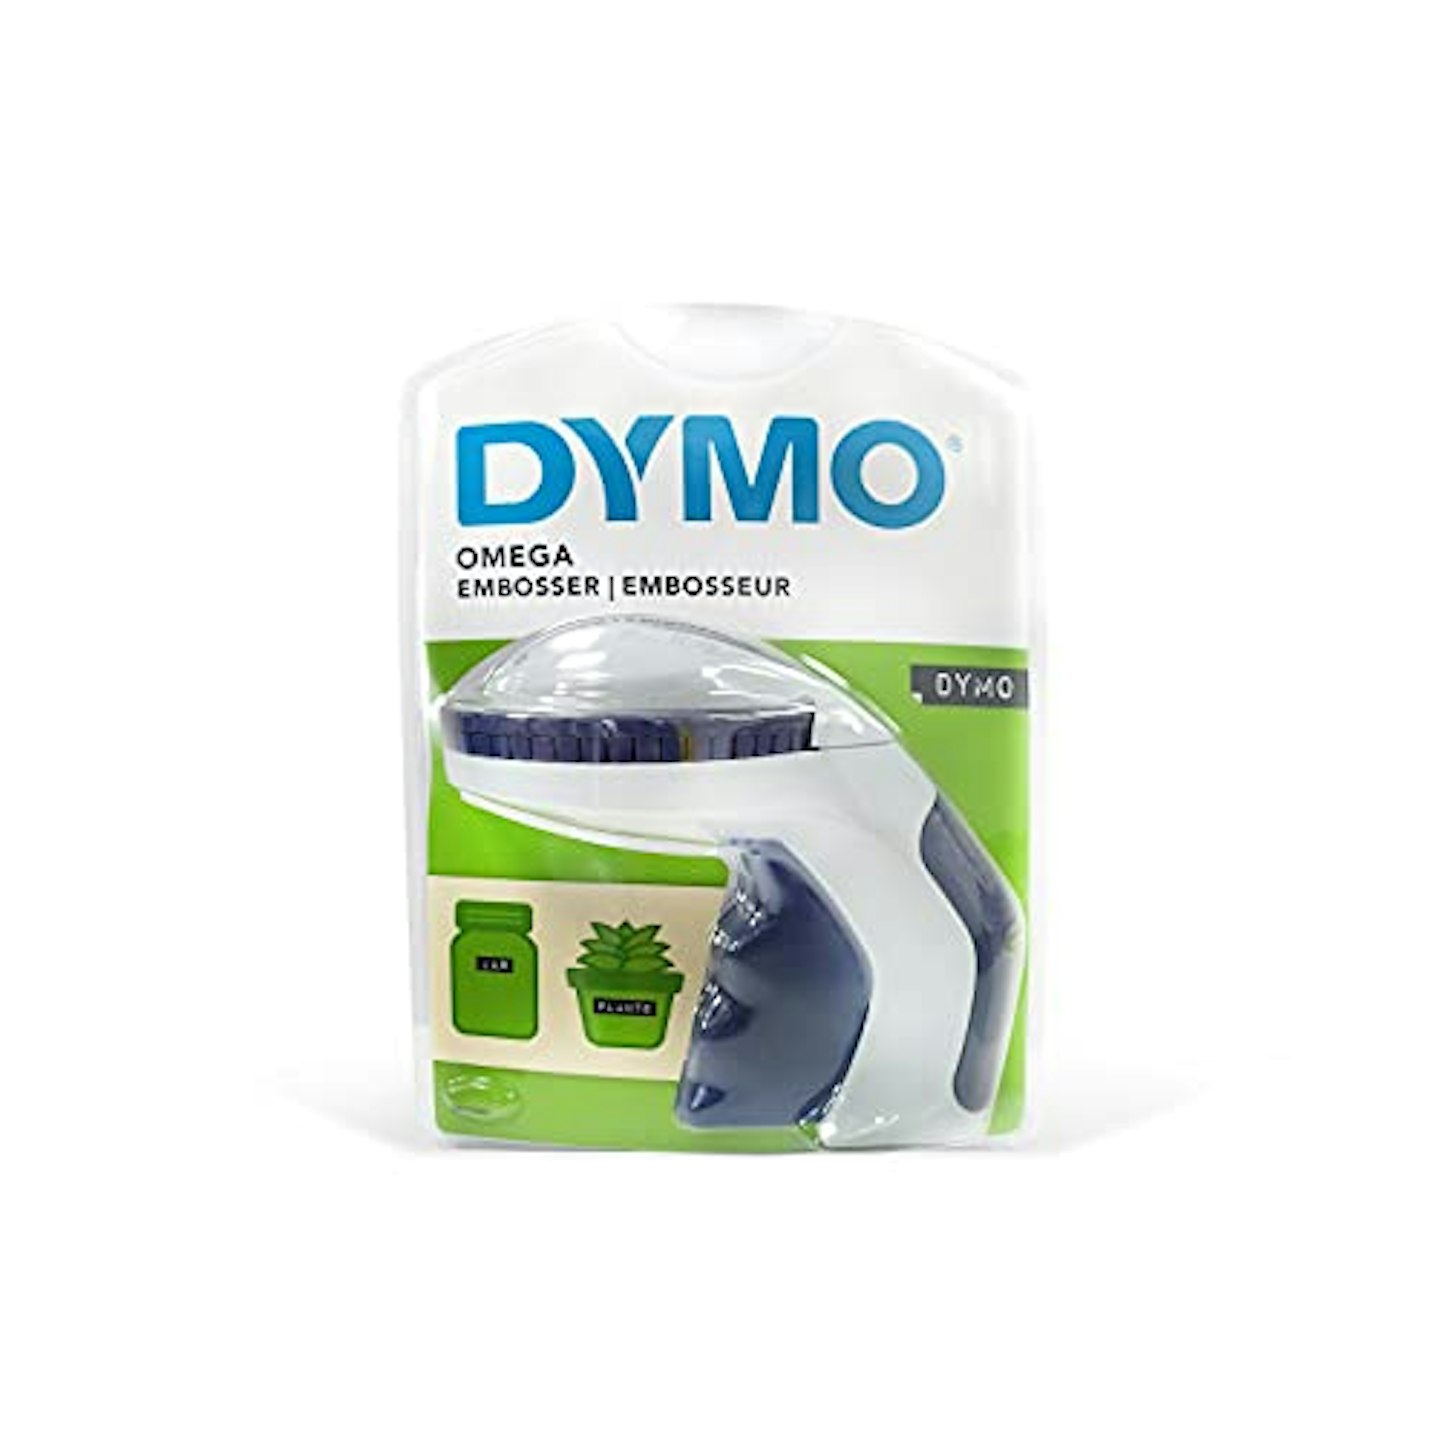 Dymo label maker 